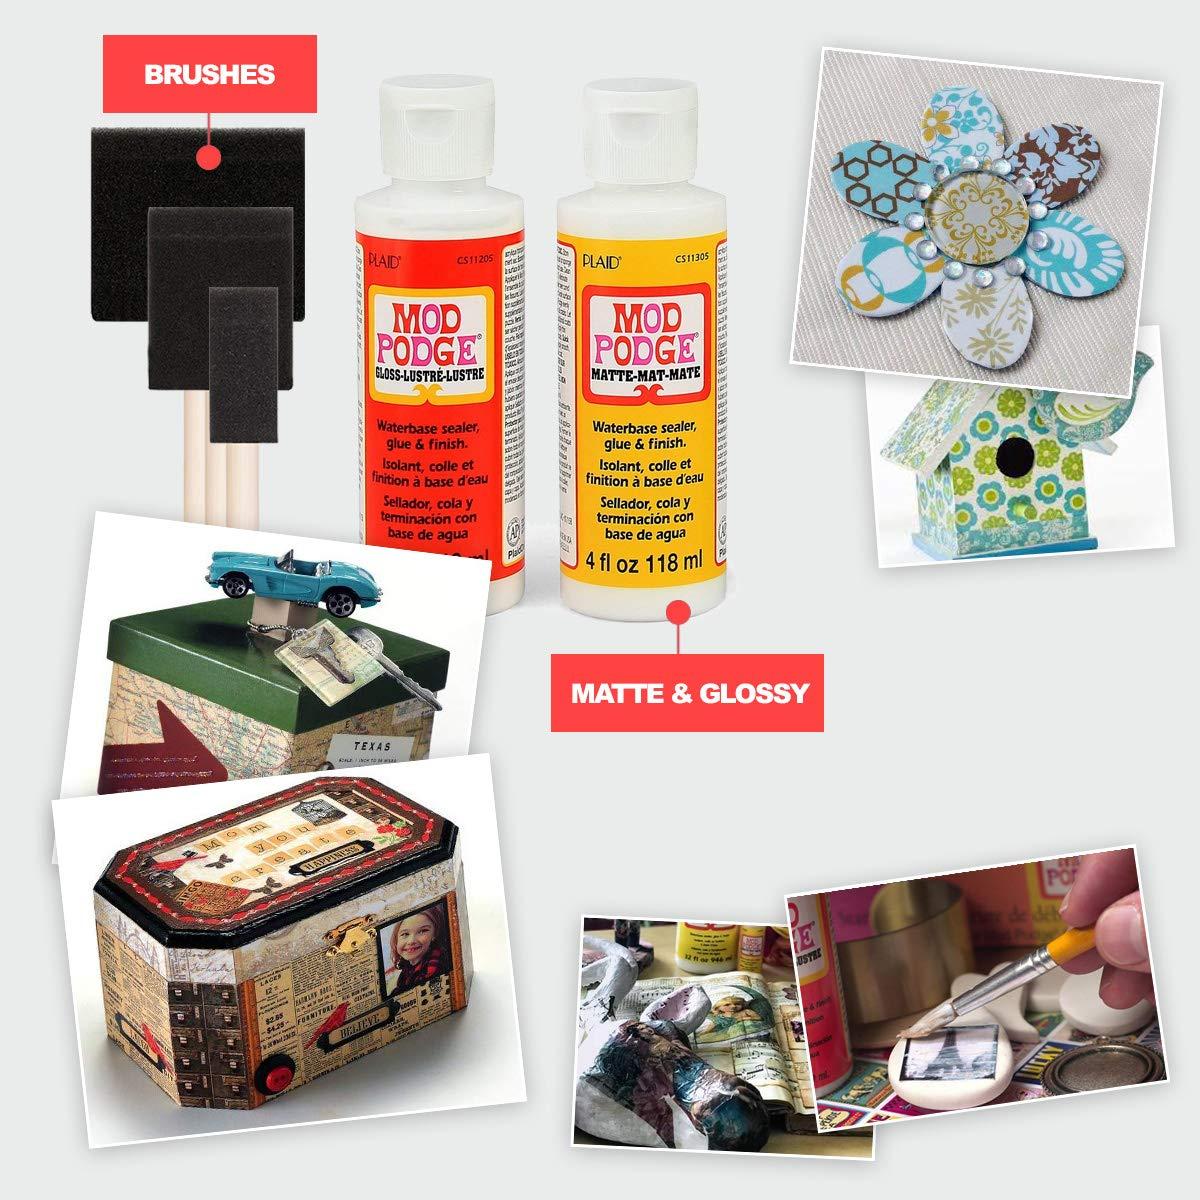 How do I use Mod Podge Puzzle Saver? - Brand - DIY Craft Supplies